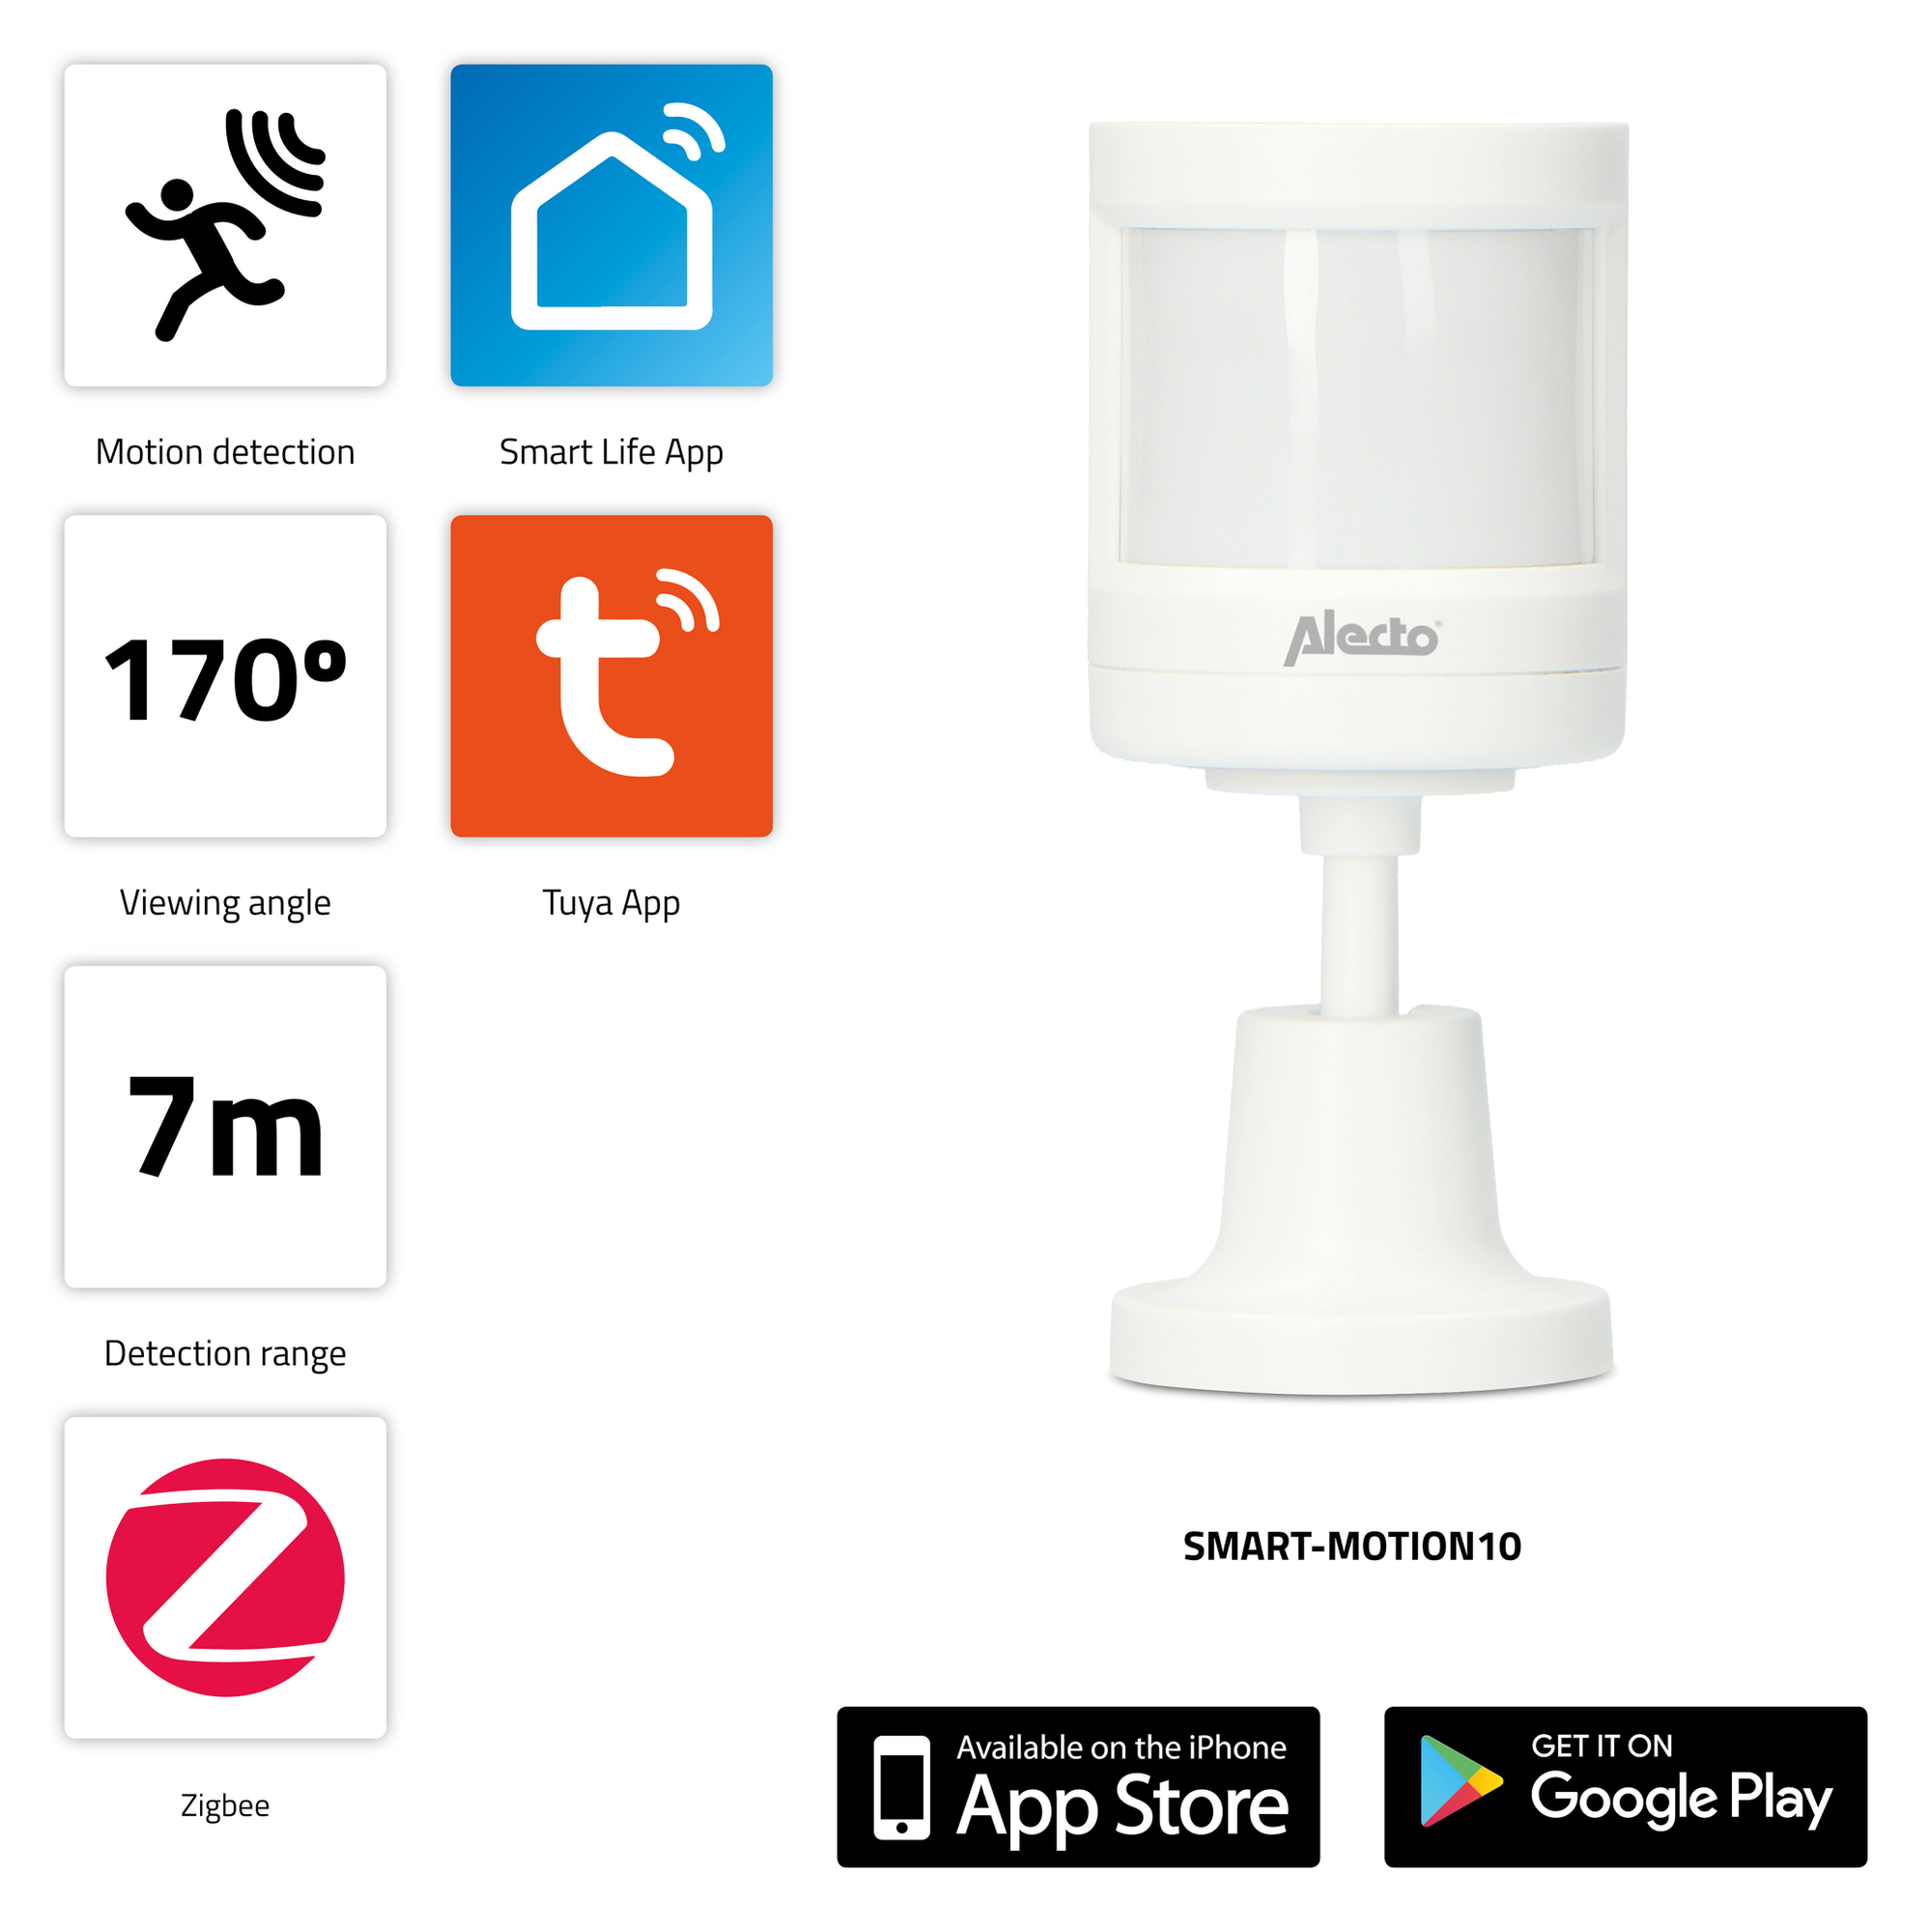 zur Smarter - Hausautomatisierung,WLAN, Bewegungsmelder Zigbee ALECTO SMART-MOTION10 - Weiß